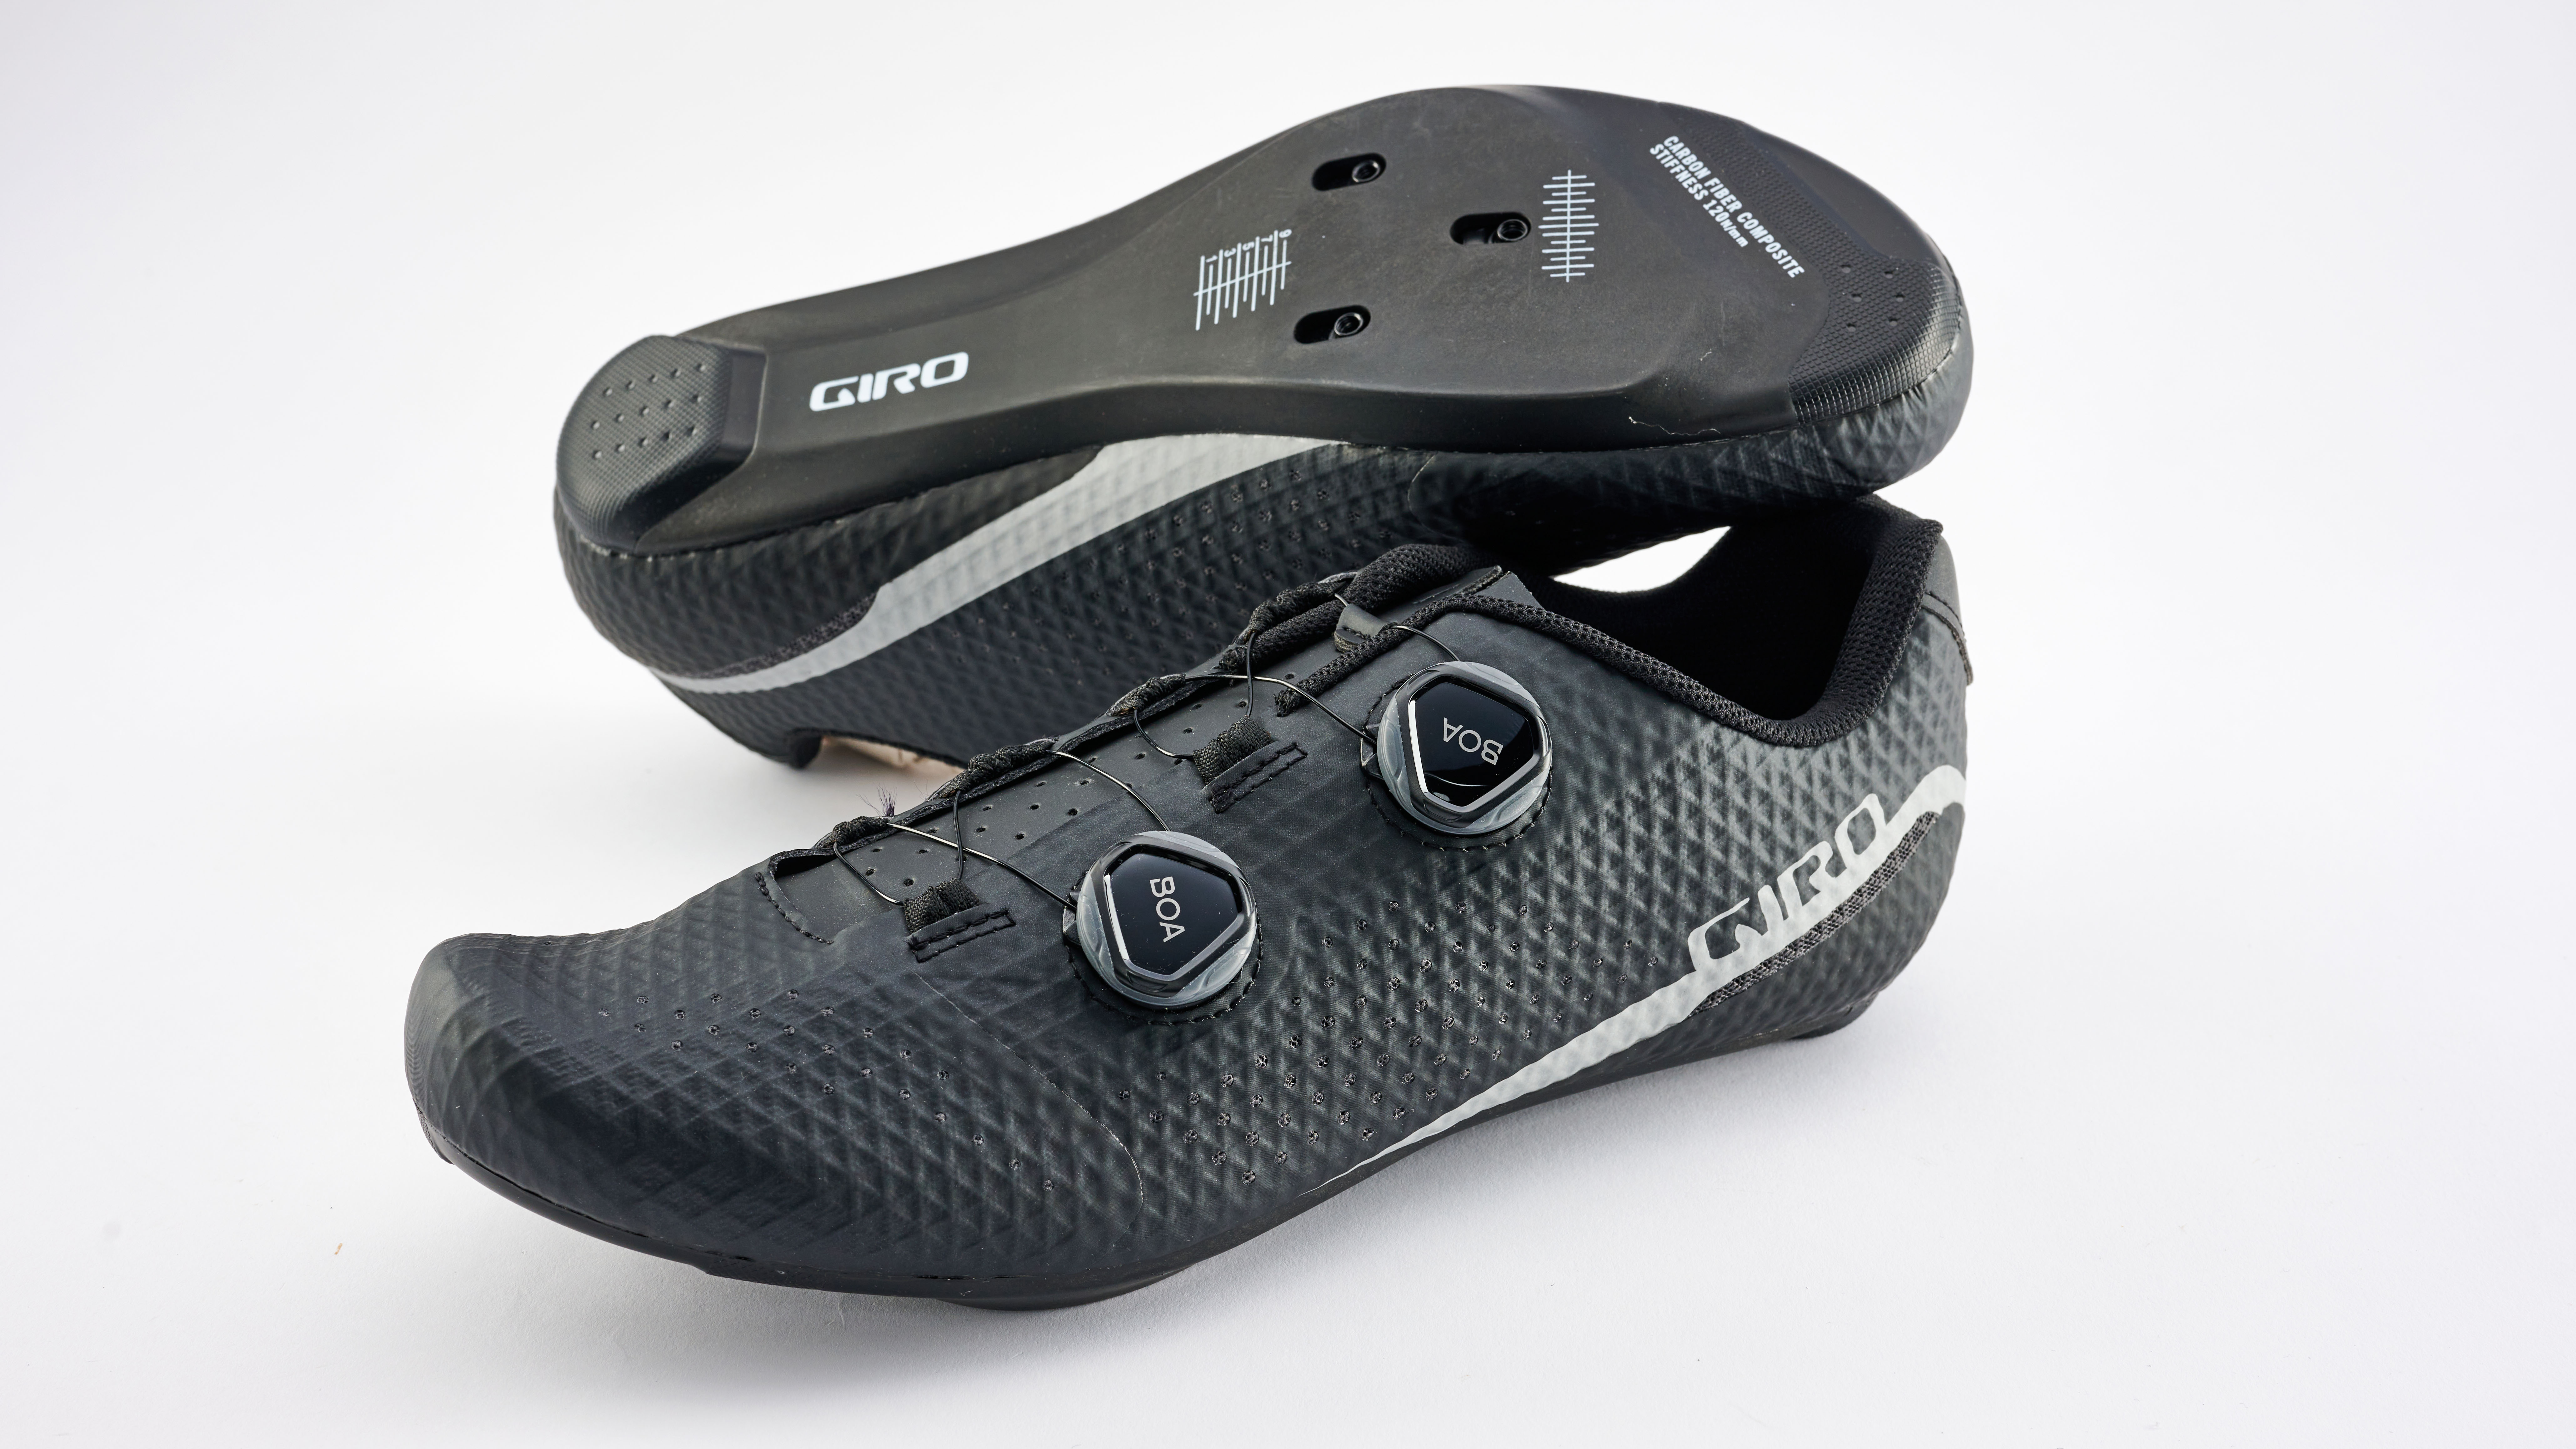 Giro Regime cycling shoes